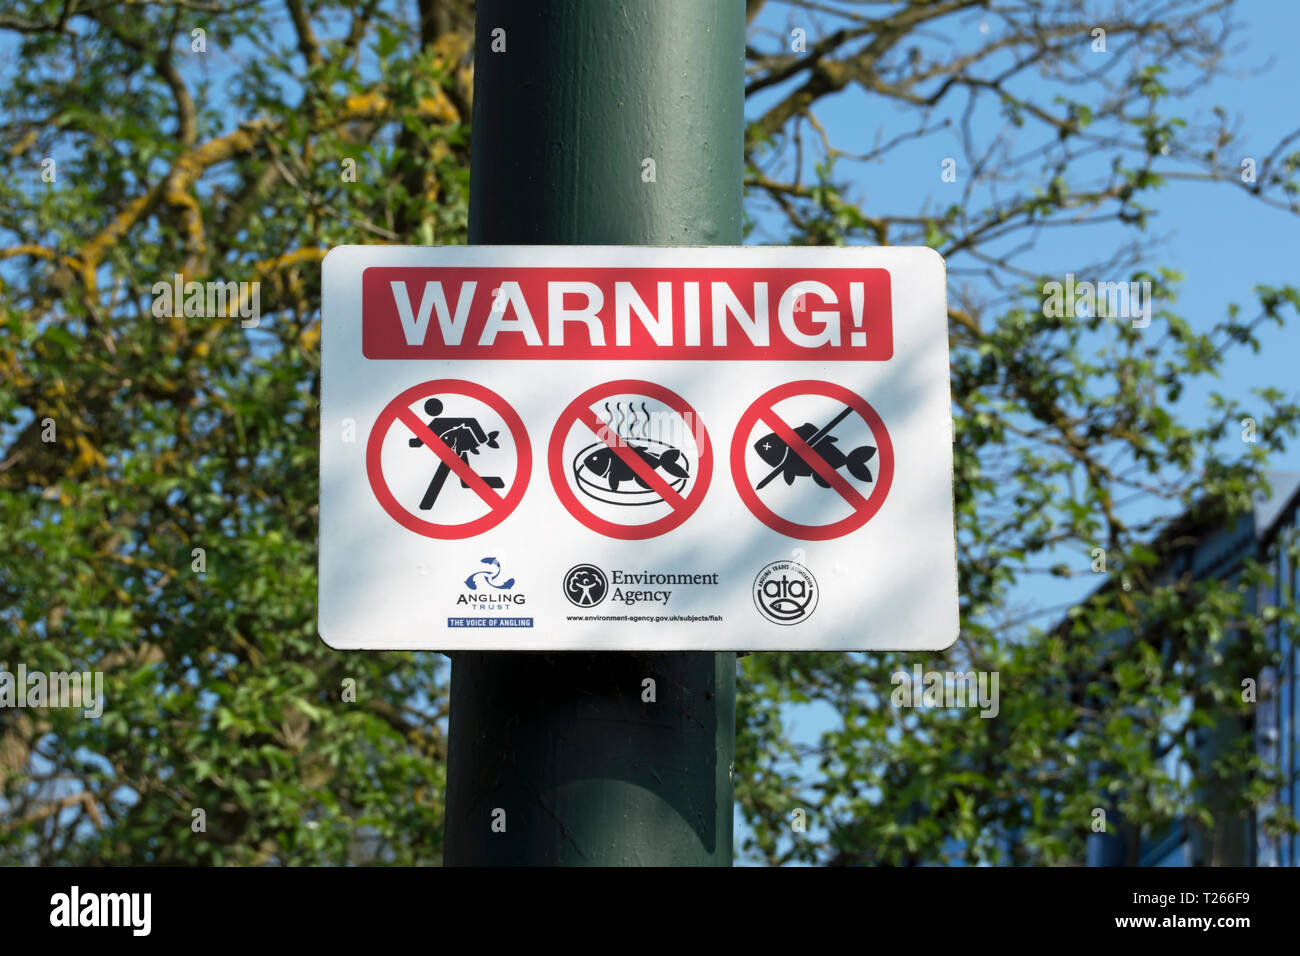 Umweltagentur anmelden, auf der Themse in Teddington, Middlesex, England, bei Osteuropäer Warnung kein Halten oder Garen von Fisch ausgerichtet Stockfoto